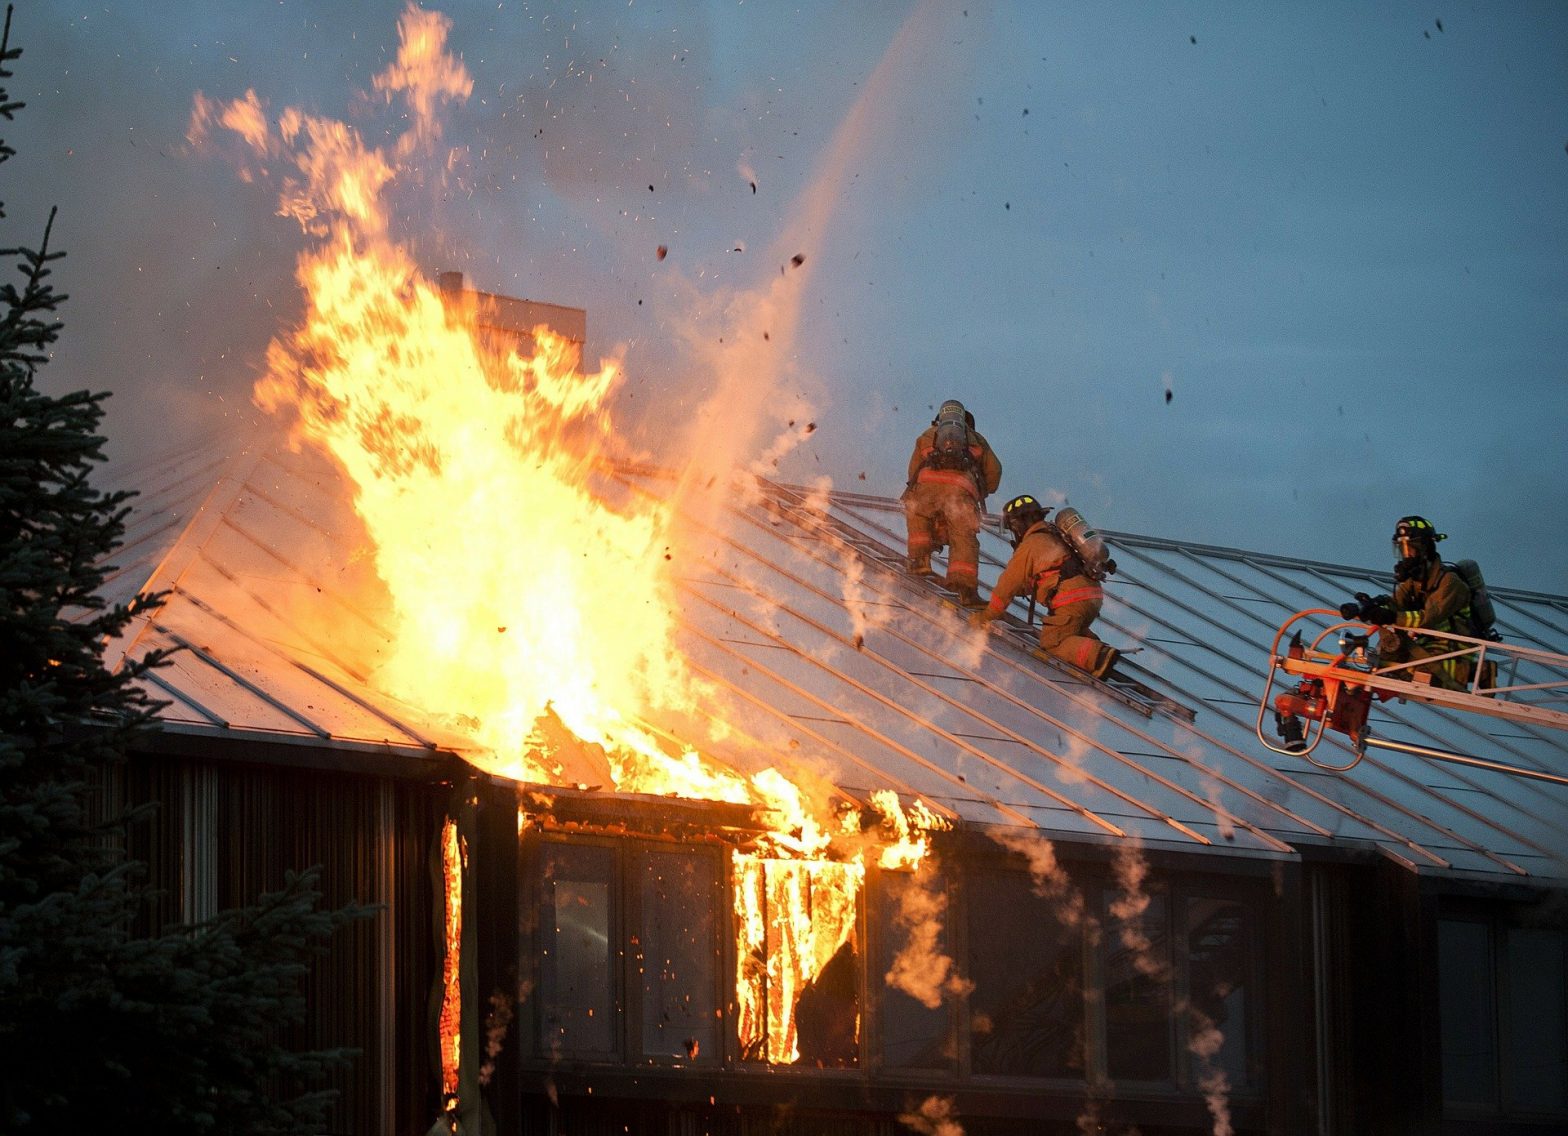 Foto de bombeiros apagando fogo em uma casa. Imagem ilustrativa para o texto incêndio e vandalismo.